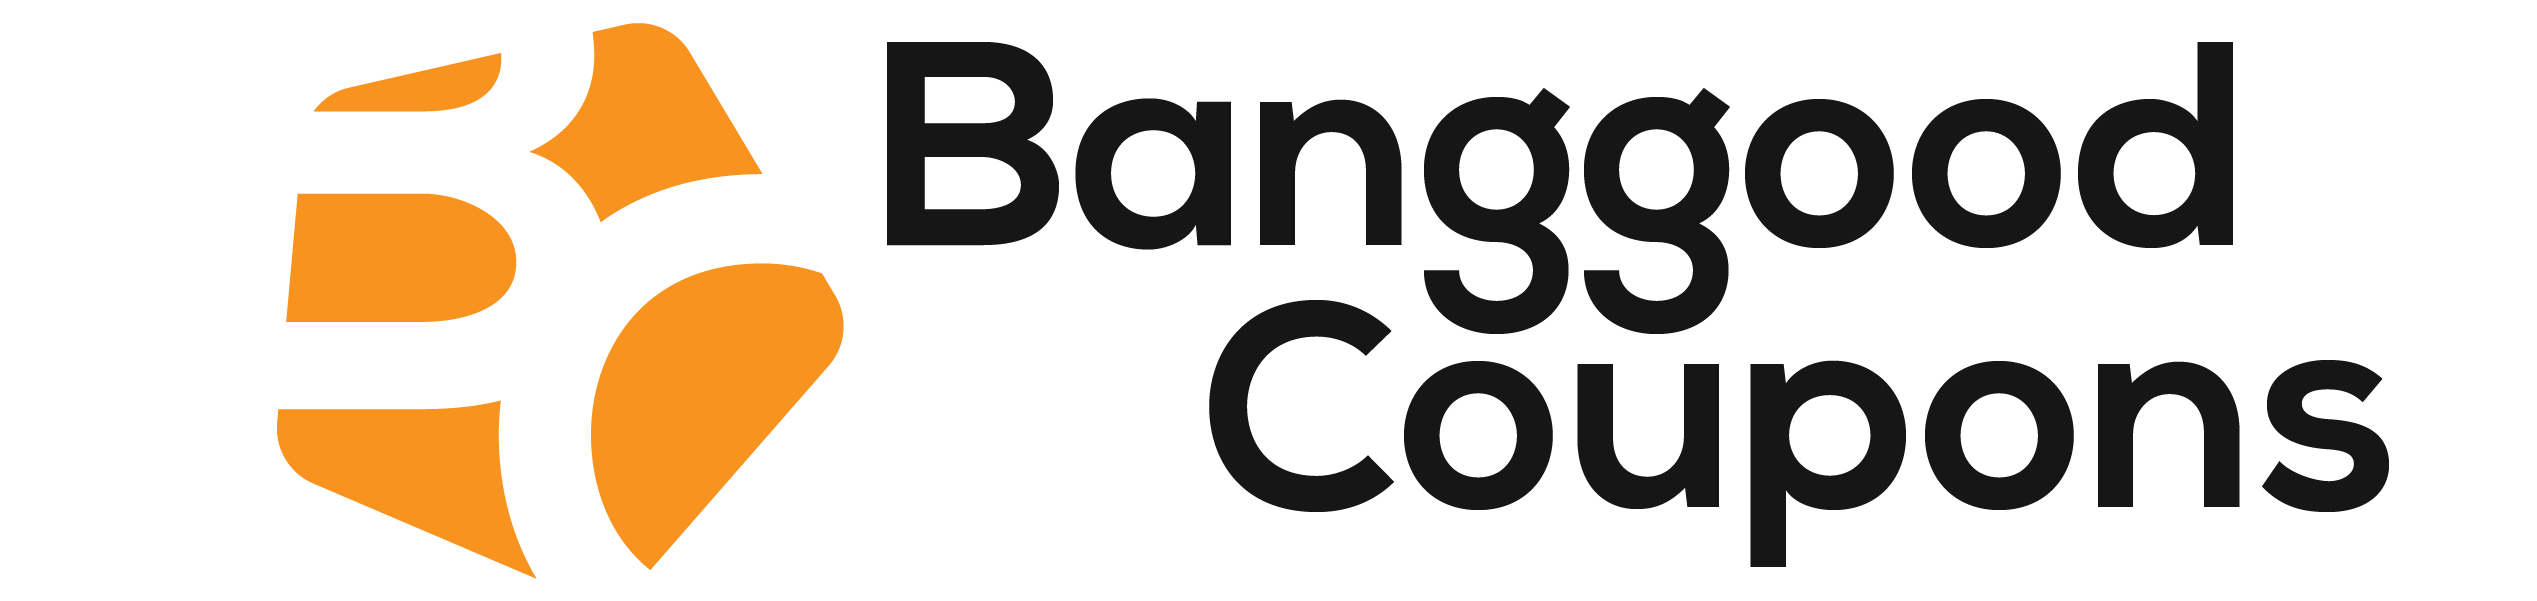 Banggood Logo - LogoDix